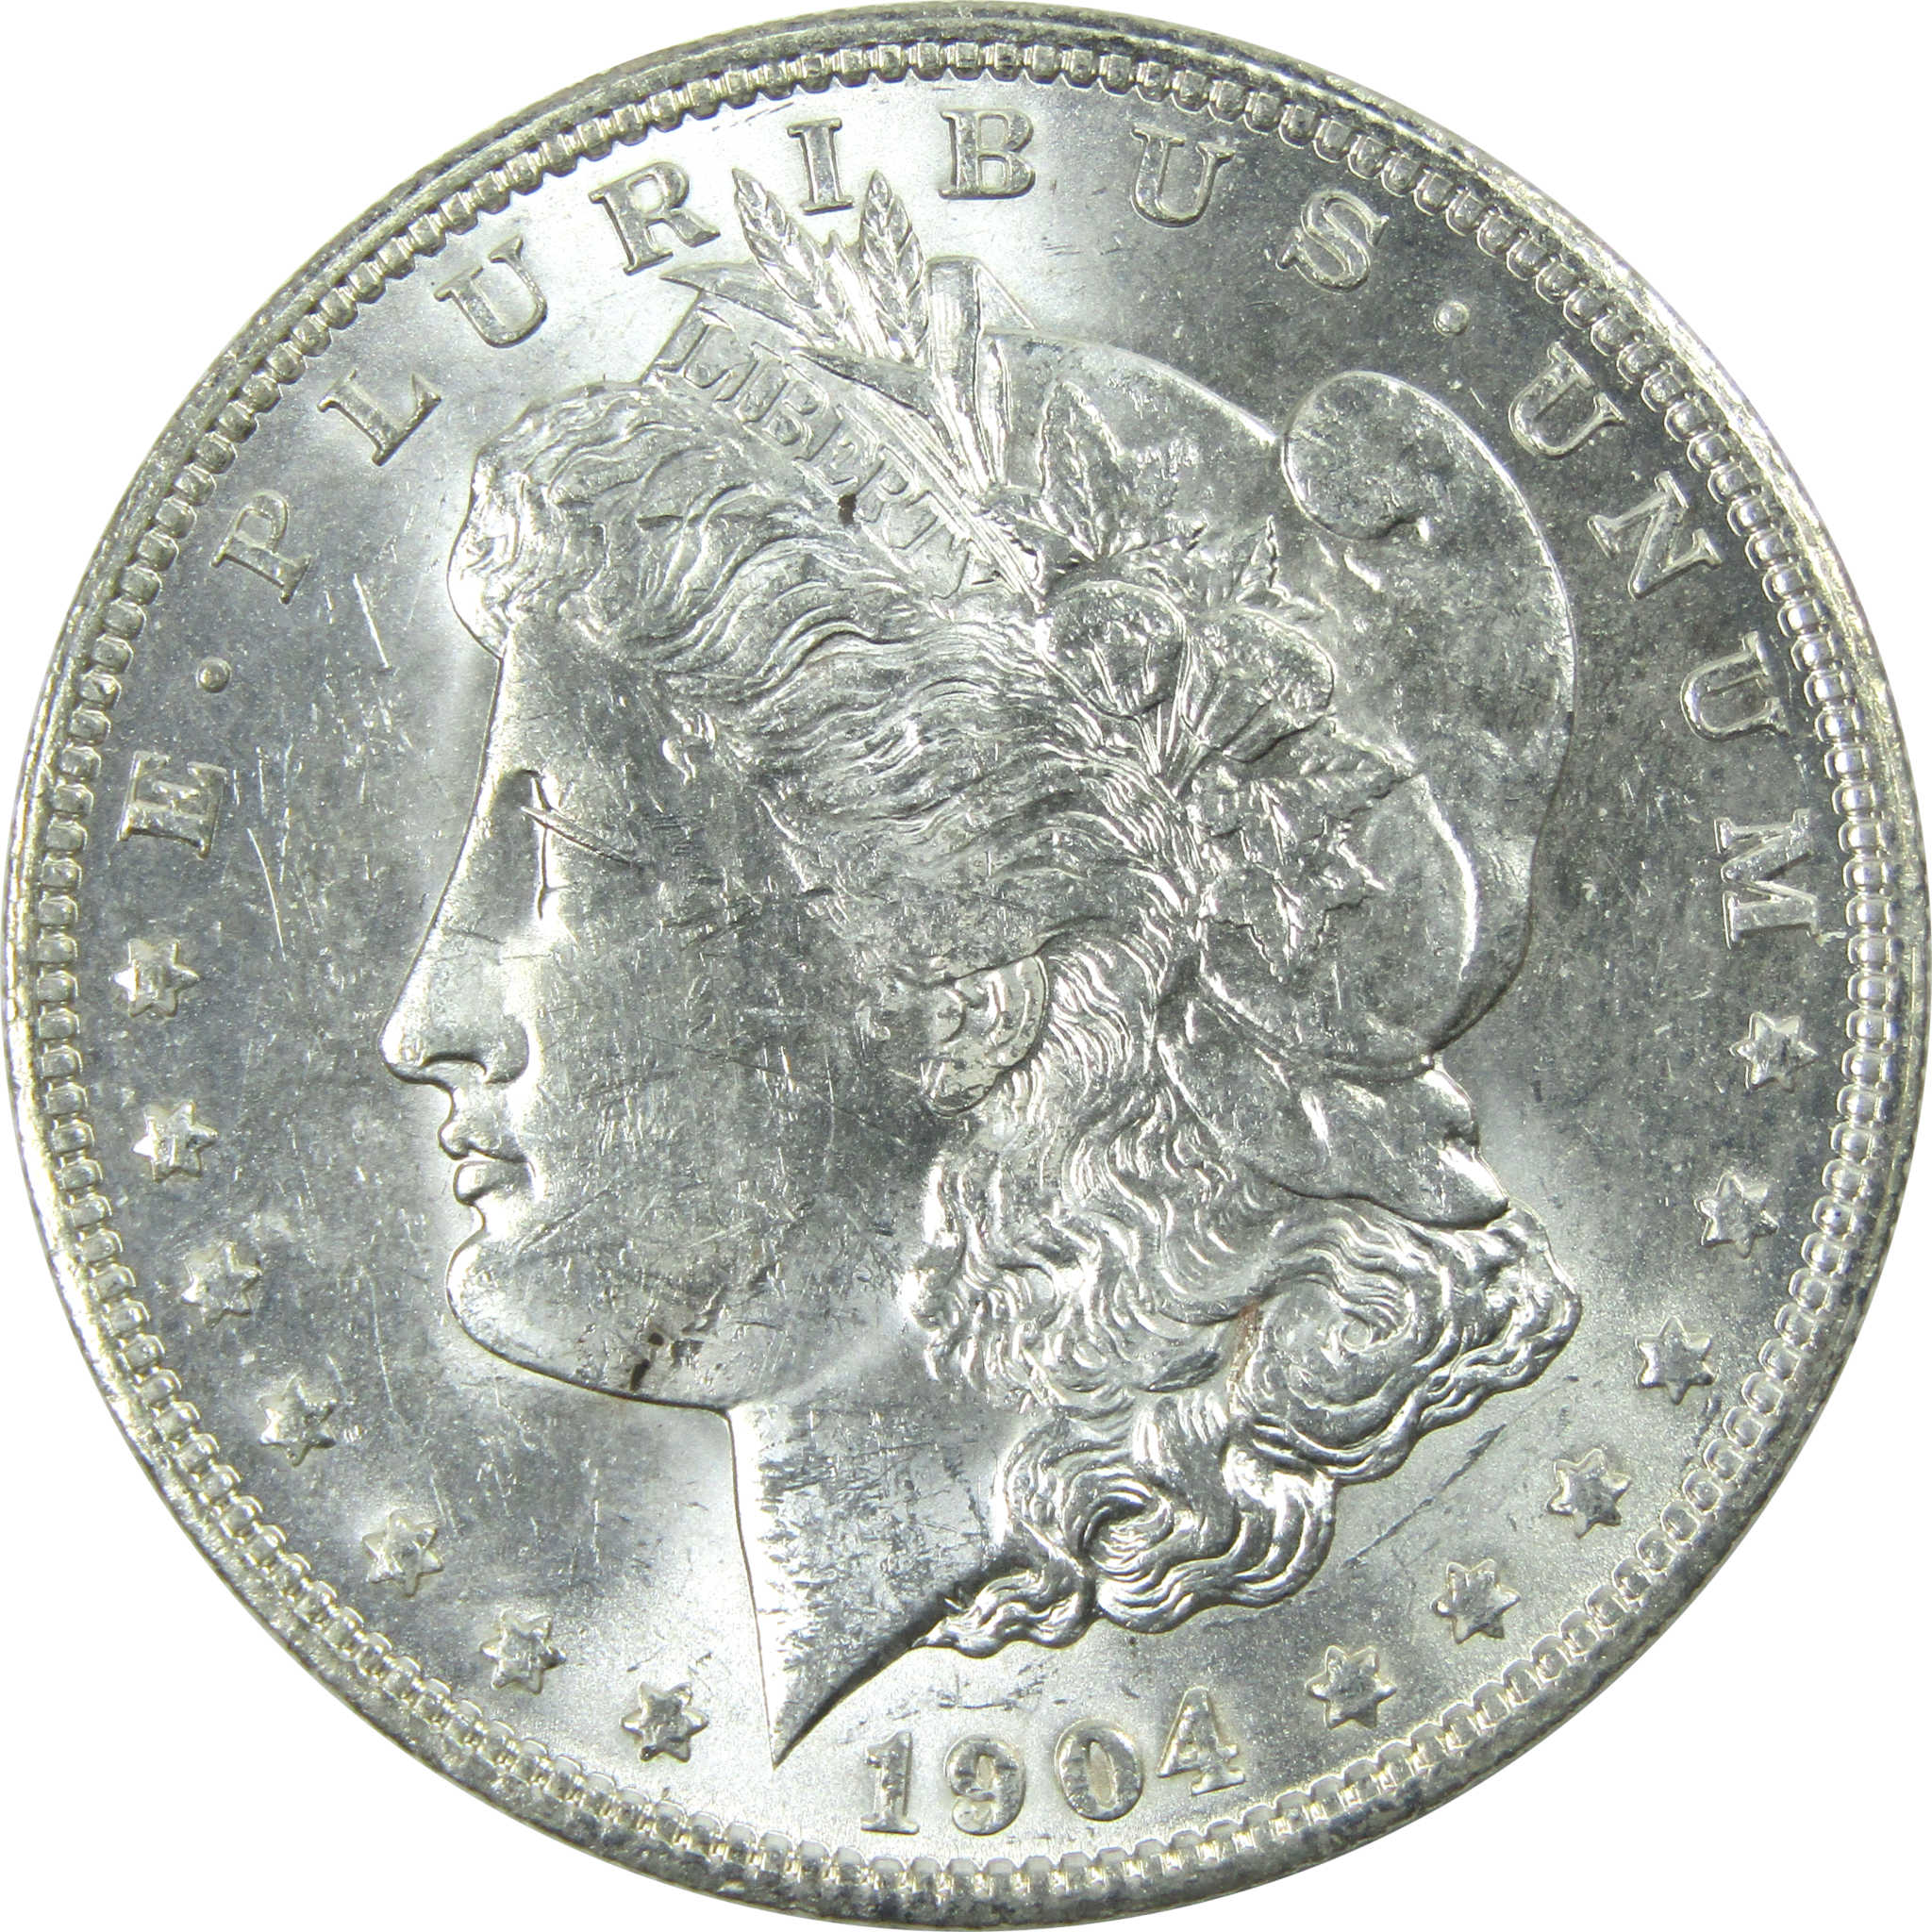 1904 O Morgan Dollar Uncirculated Silver $1 Coin SKU:I13739 - Morgan coin - Morgan silver dollar - Morgan silver dollar for sale - Profile Coins &amp; Collectibles